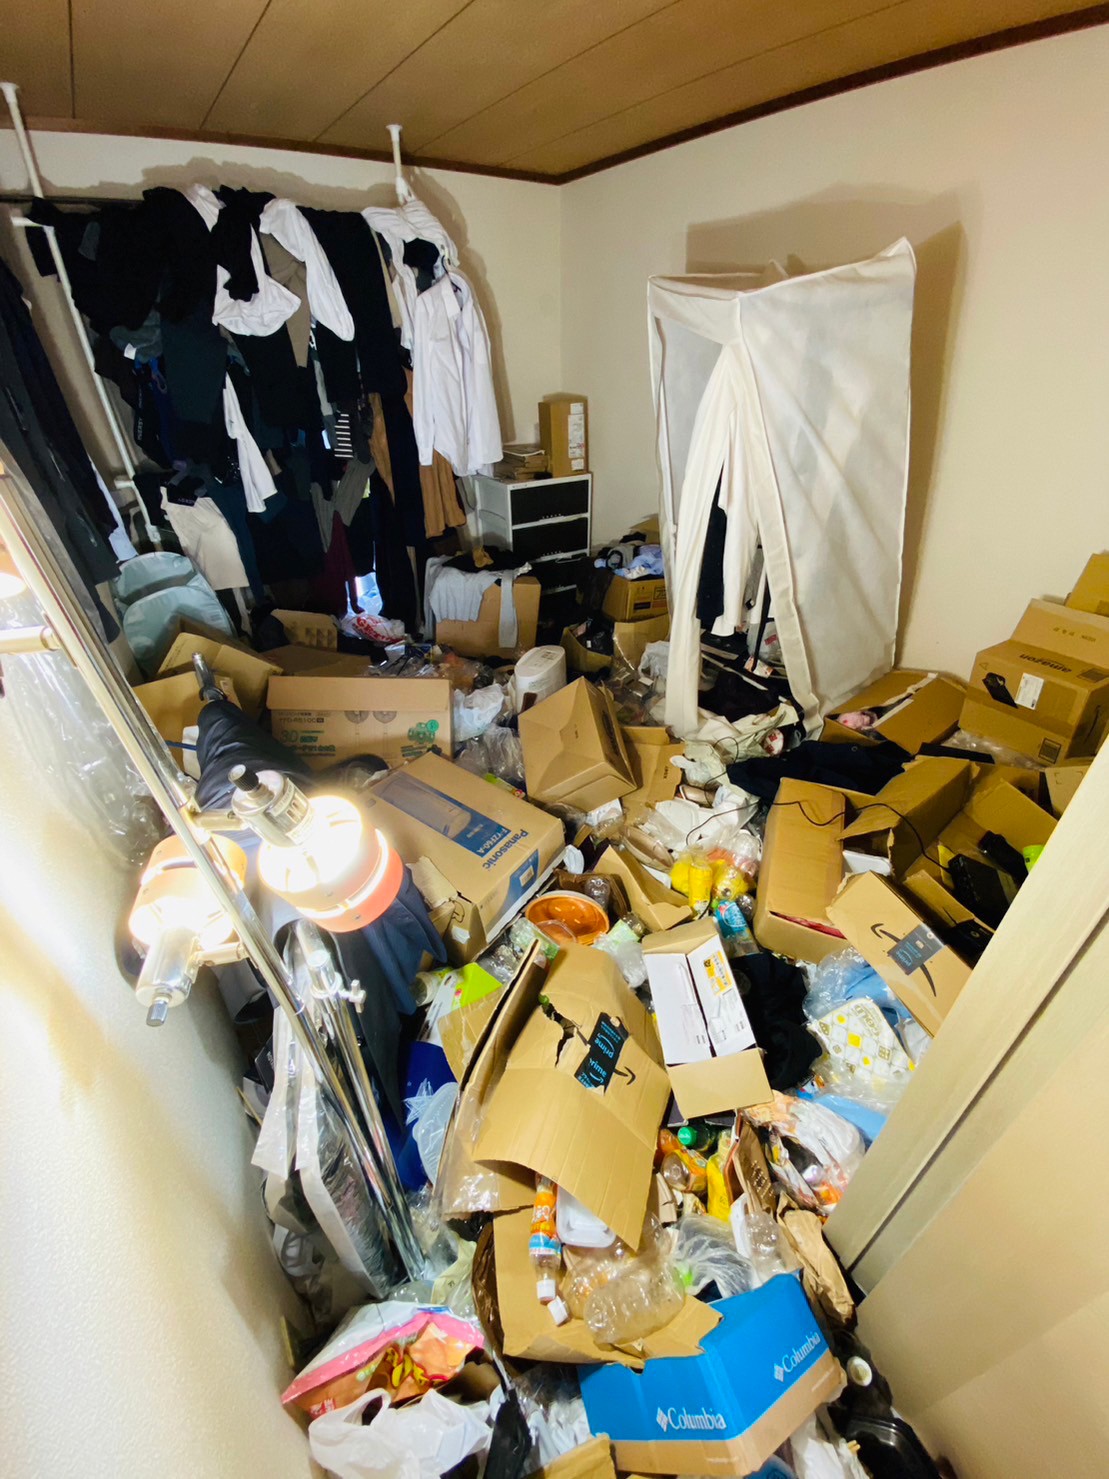 衣類、加湿器、液体含むビン・缶・ペットボトル、段ボールなど家庭ゴミ1部屋分の回収前の状態